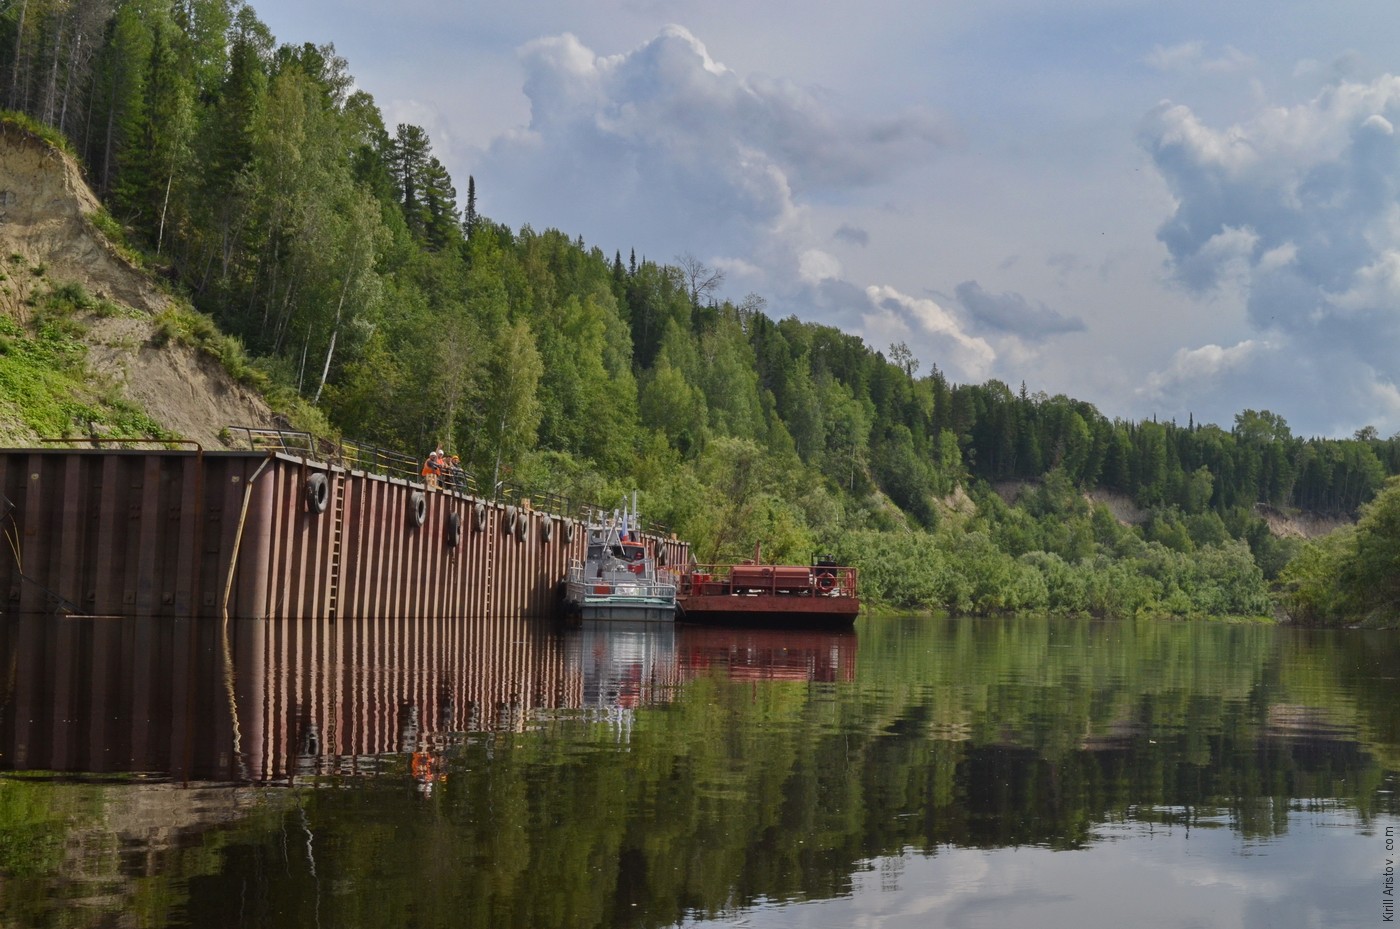 Причал нефтяников немного выше устья реки Тямка, Location: Река Демьянка. Уватский район, Тюменская область, Россия.